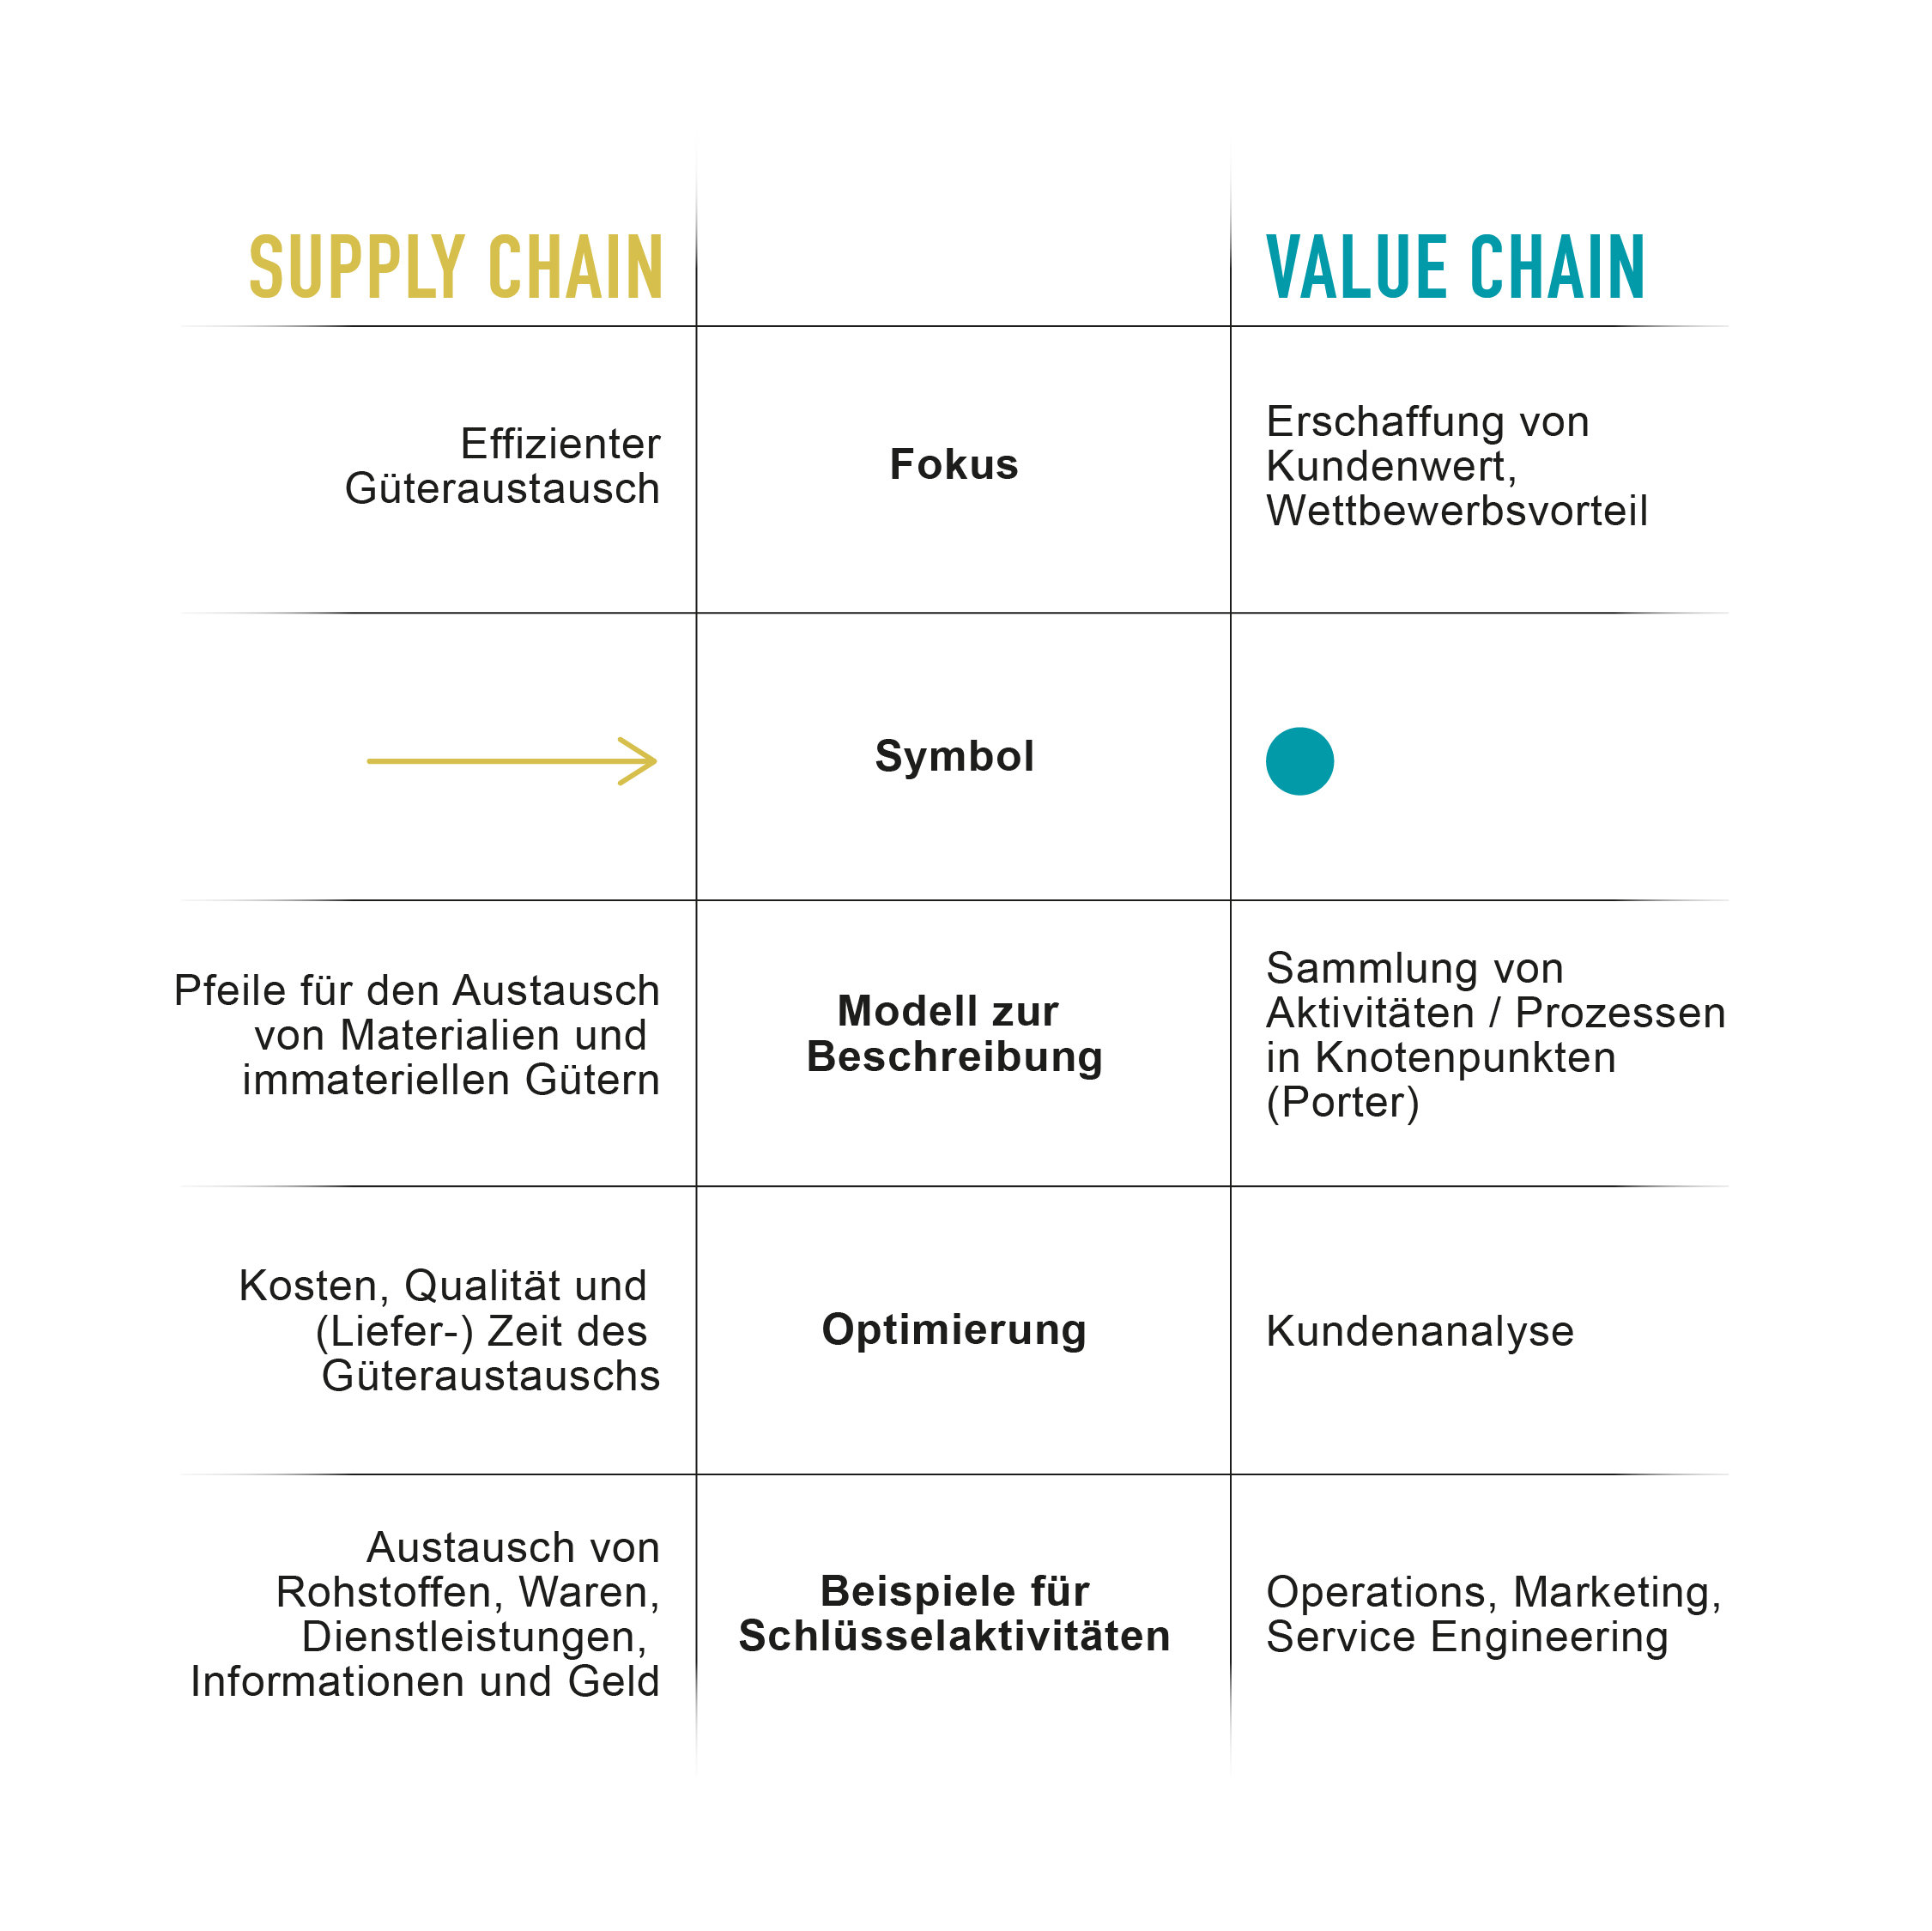 Detaillierte Gegenüberstellung: Value Chain vs. Supply Chain